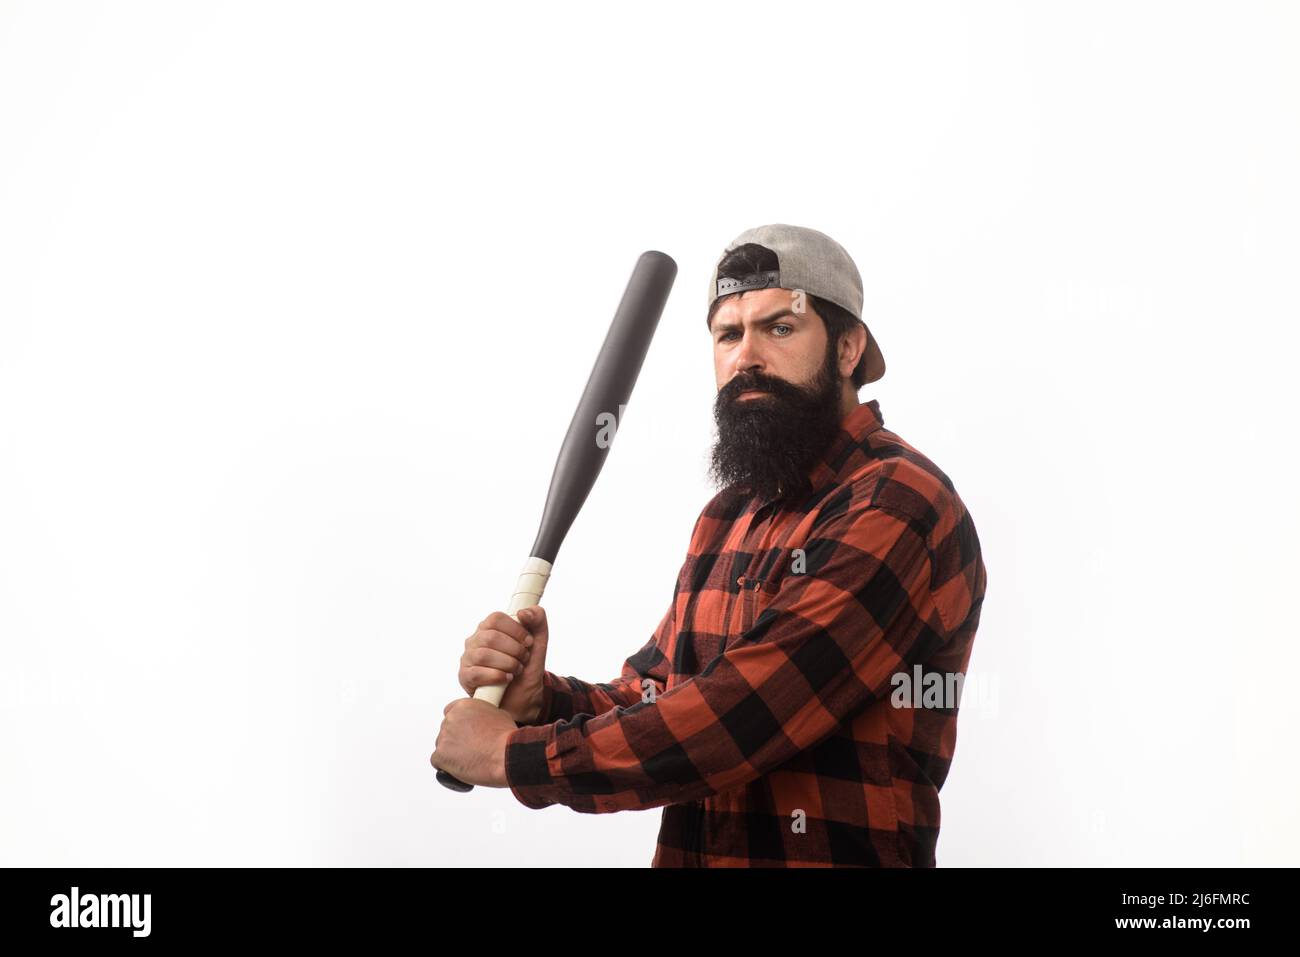 Giocatore professionista di baseball. Uomo bearded in camicia a quadri swing con pipistrello. Formazione, stile di vita sano. Foto Stock